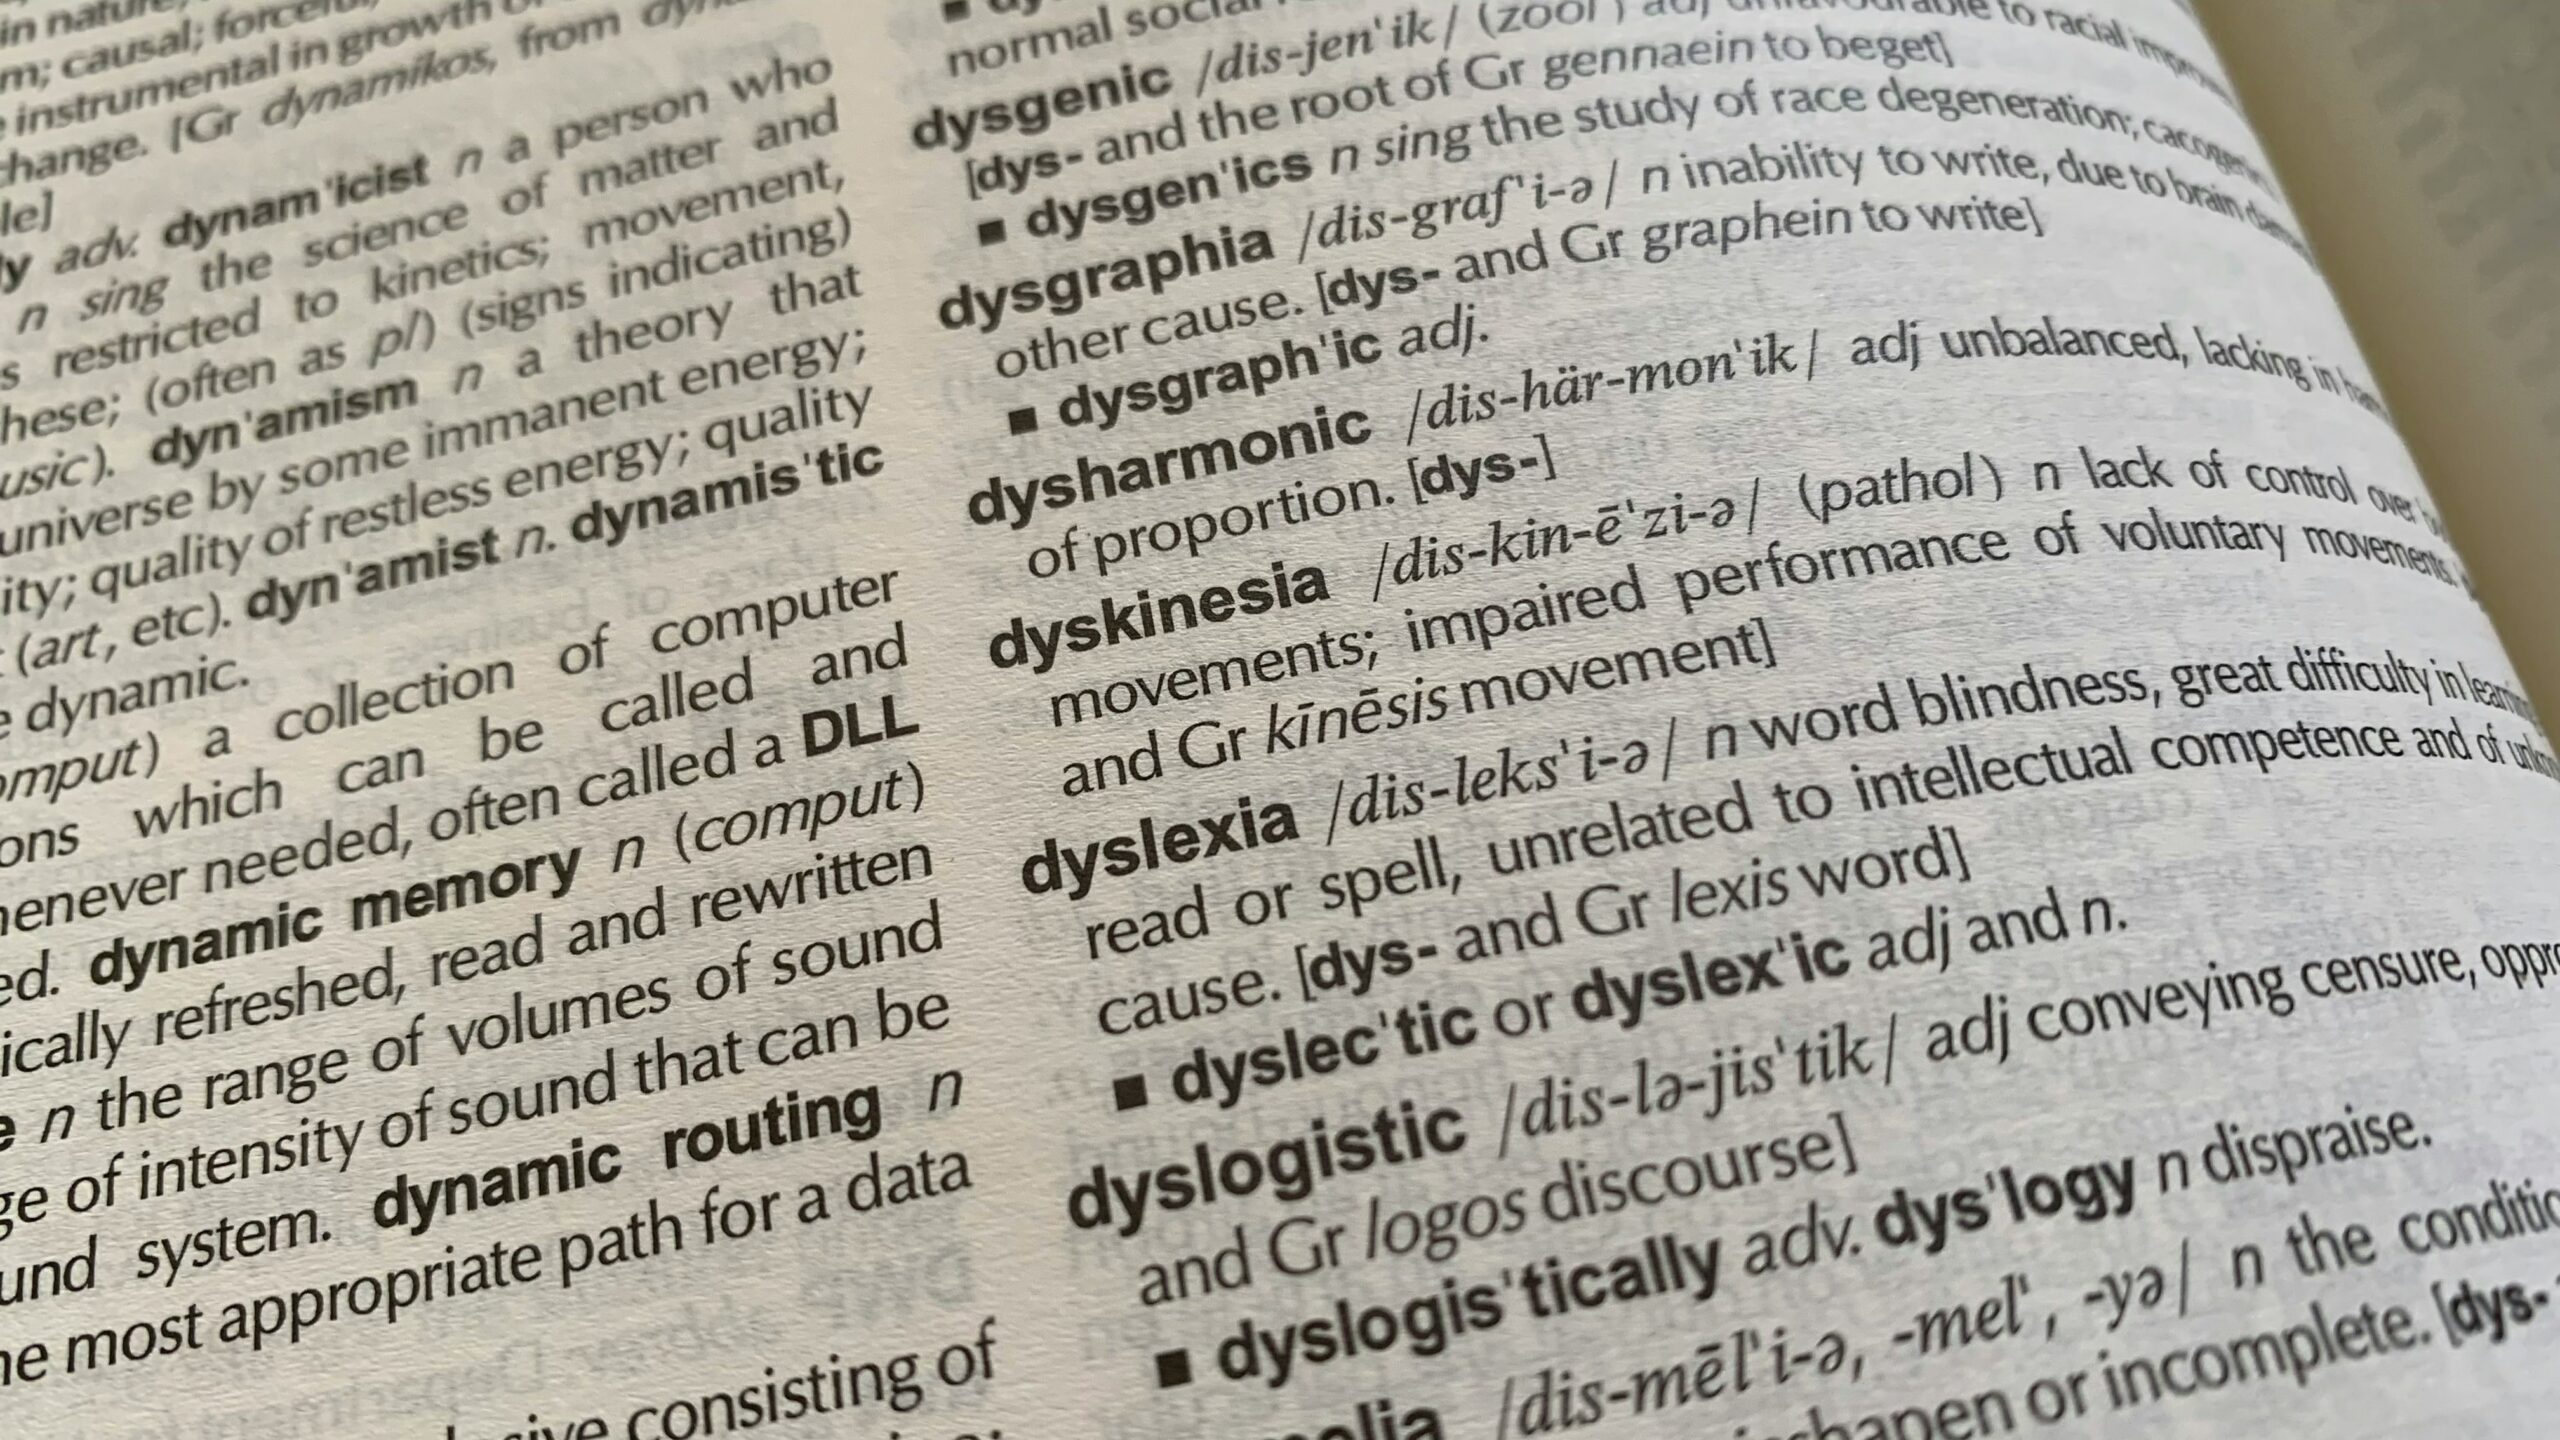 la dyslexie est un trouble de l'apprentissage de la lecture qui se caractérise par des difficultés à reconnaître les mots et à les associer aux sons correspondants.